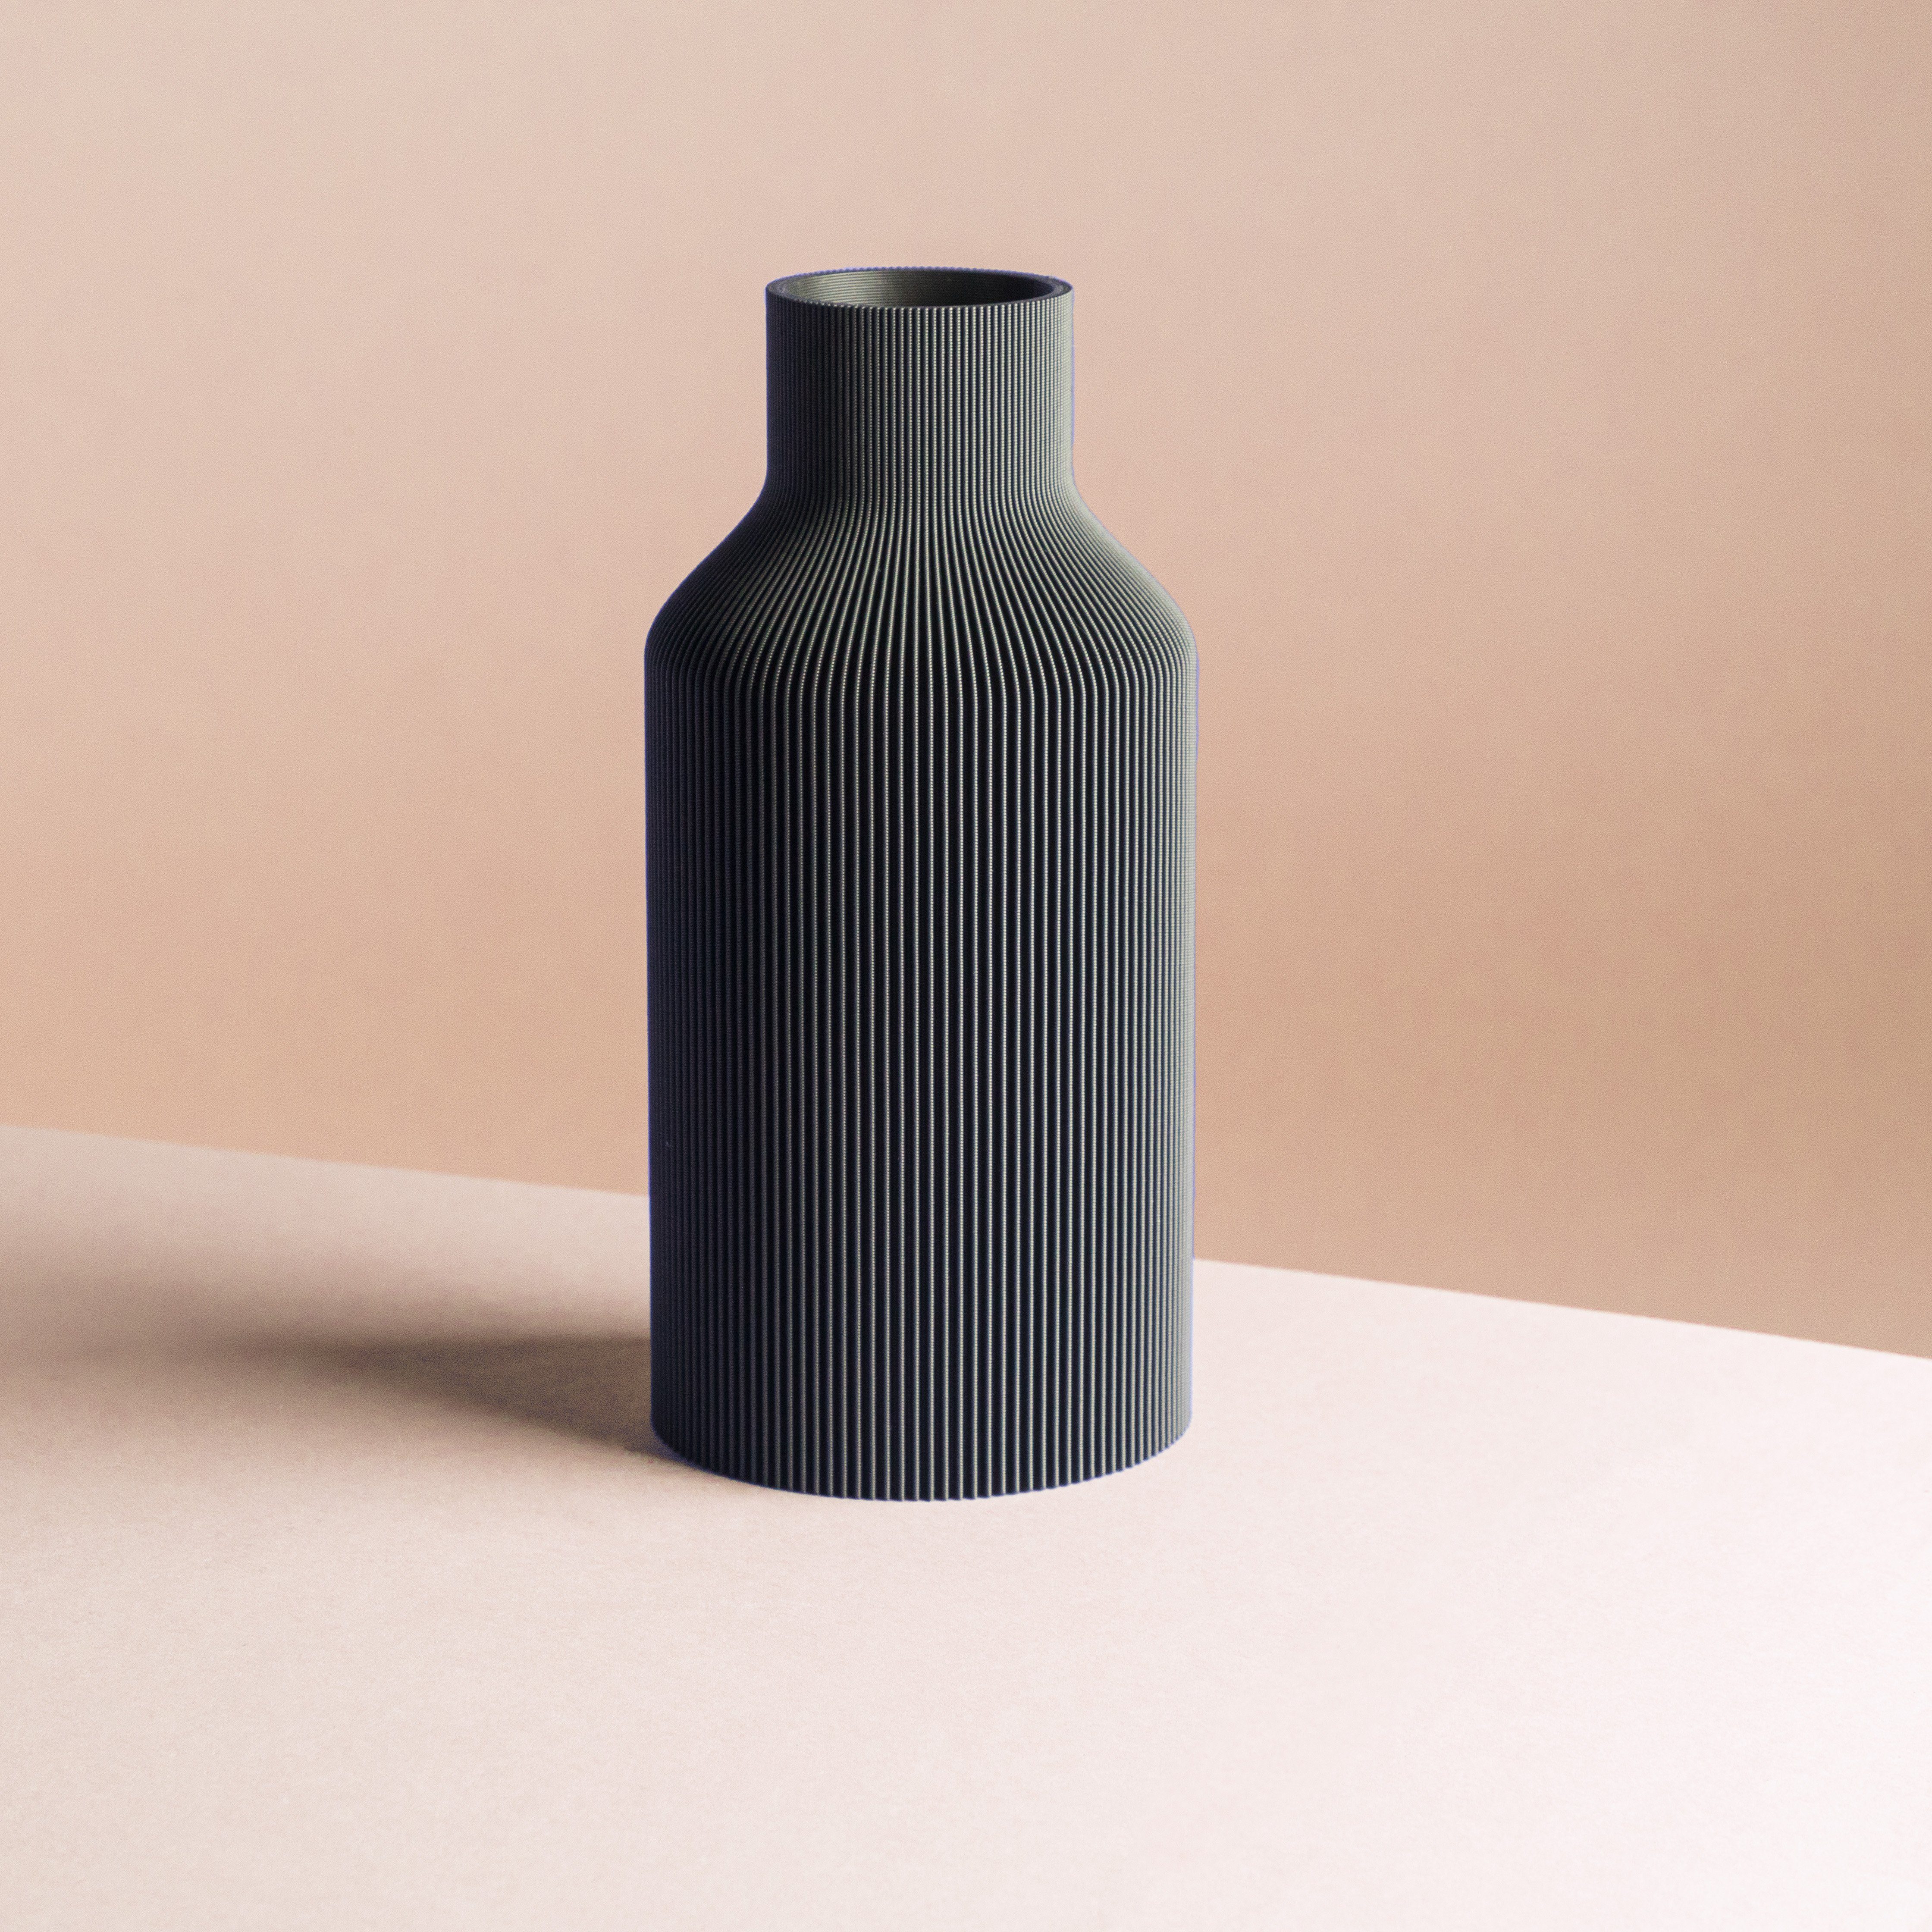 Dennismaass. Dekovase FLASCHE, 3D Druck, wundervolle Rillen-Optik, für Blumen aller Art, dekorative Vase aus dem 3D Drucker schwarz